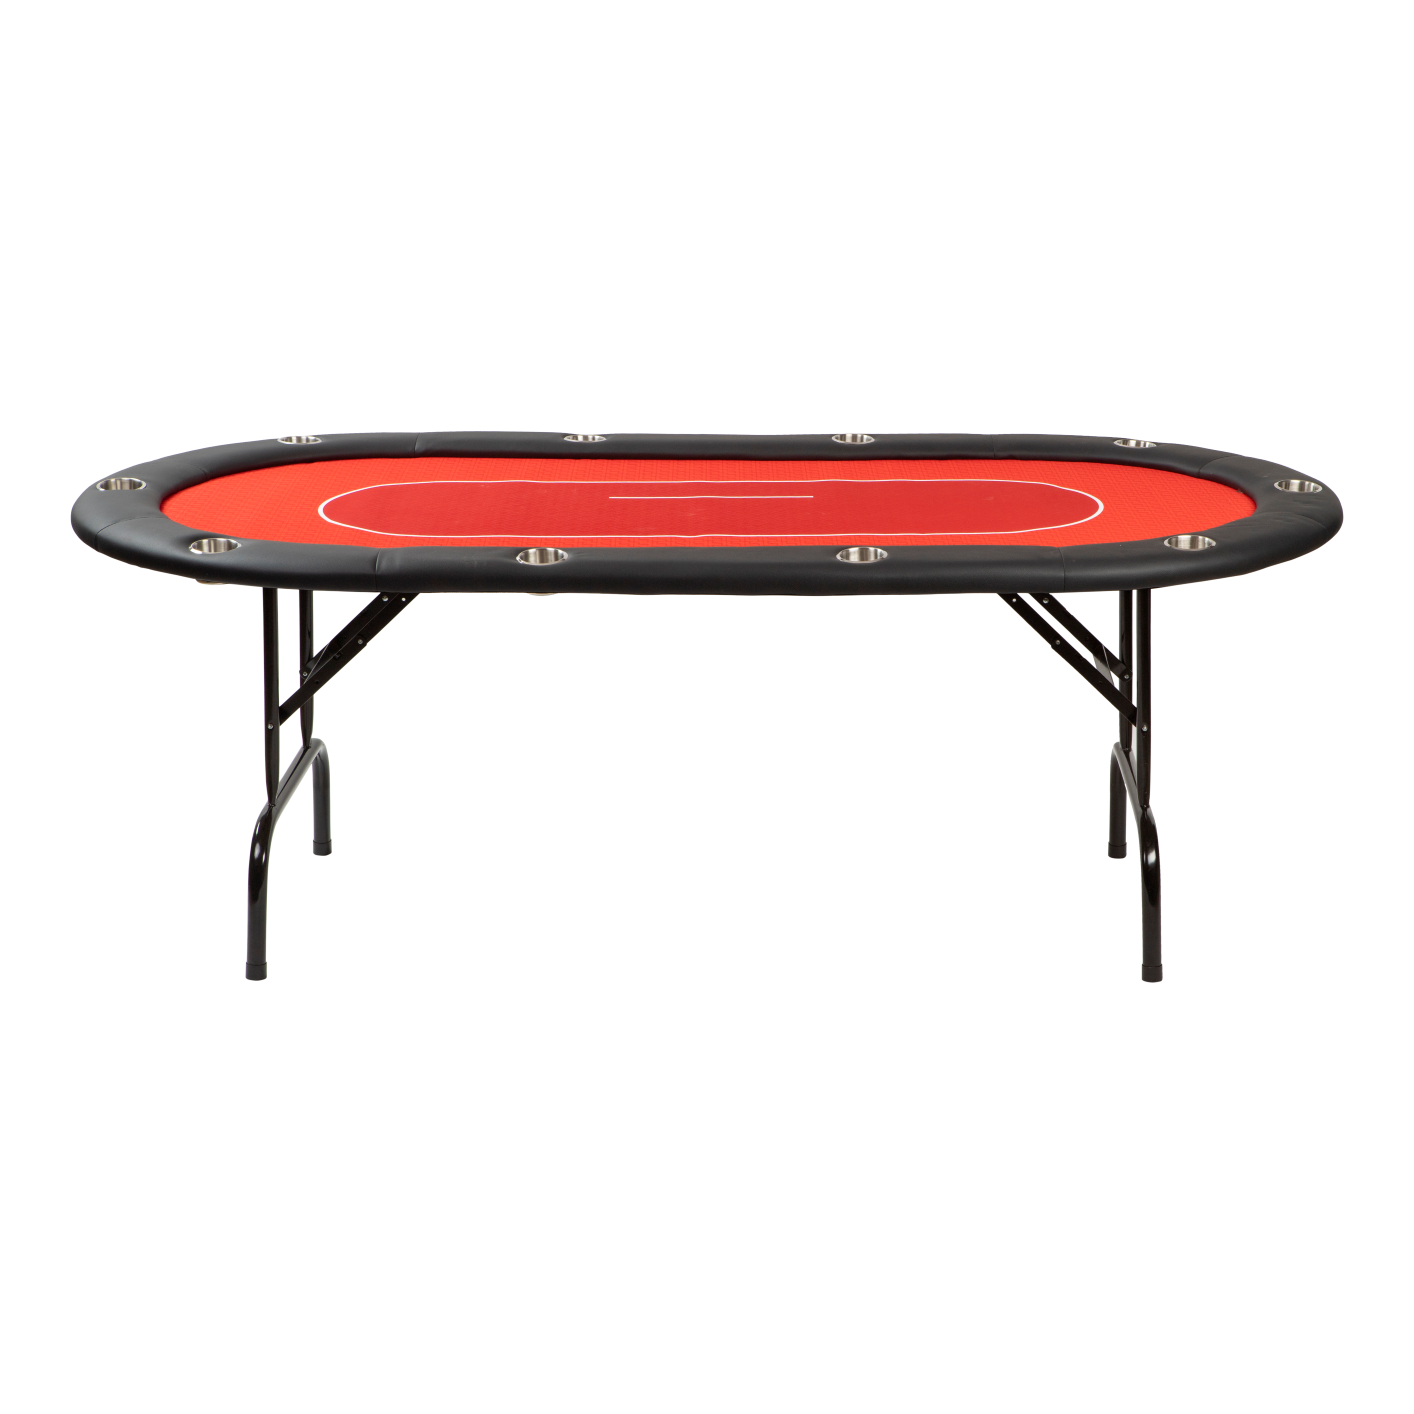 Pokertisch 9-Spieler 3-fach Klappbar Oval Grün Casino Poker Tisch Pokertable DHL 